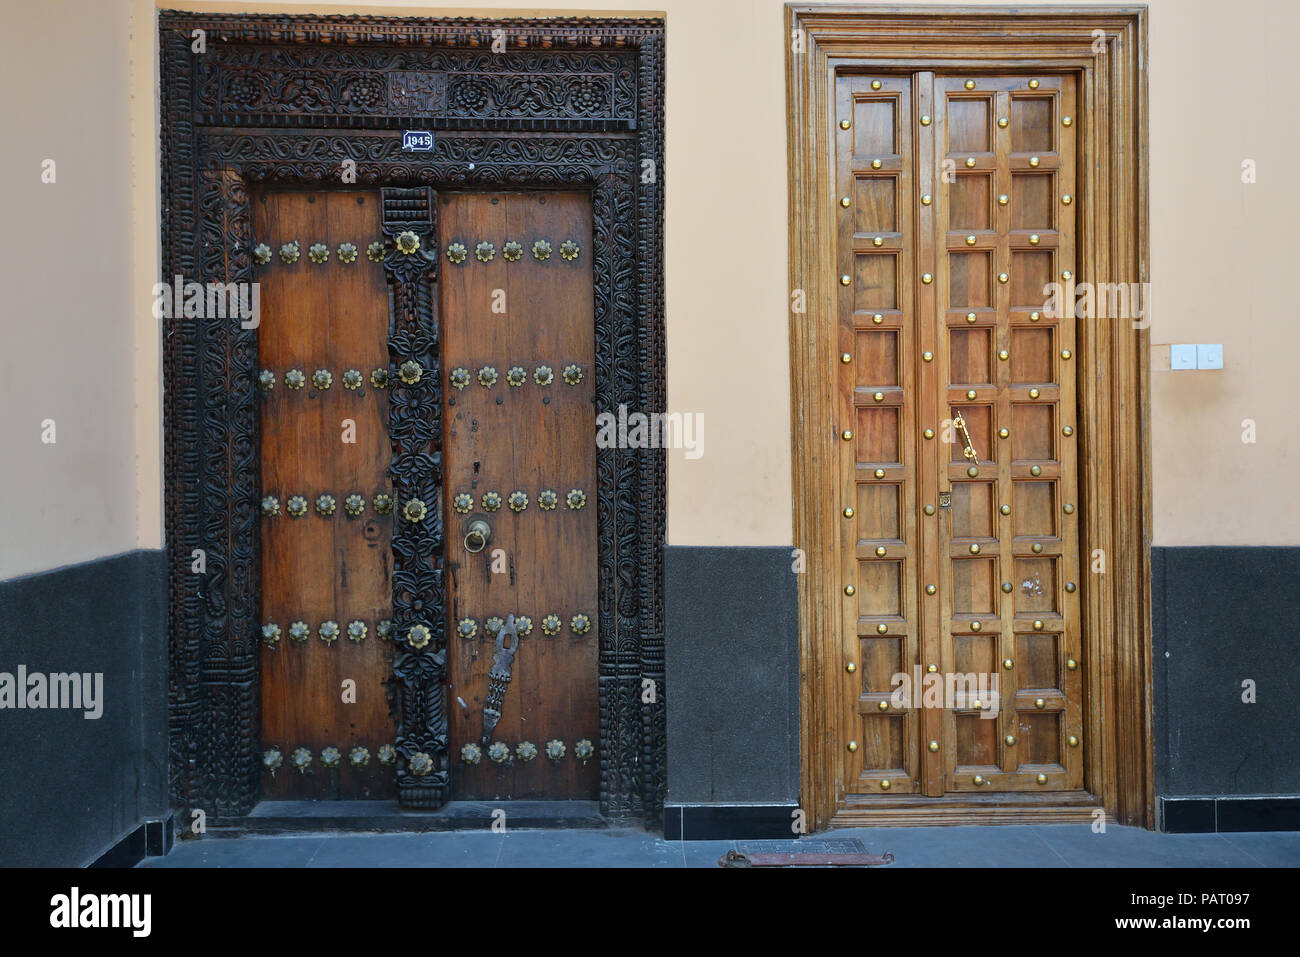 Zanzibari doors Stock Photo